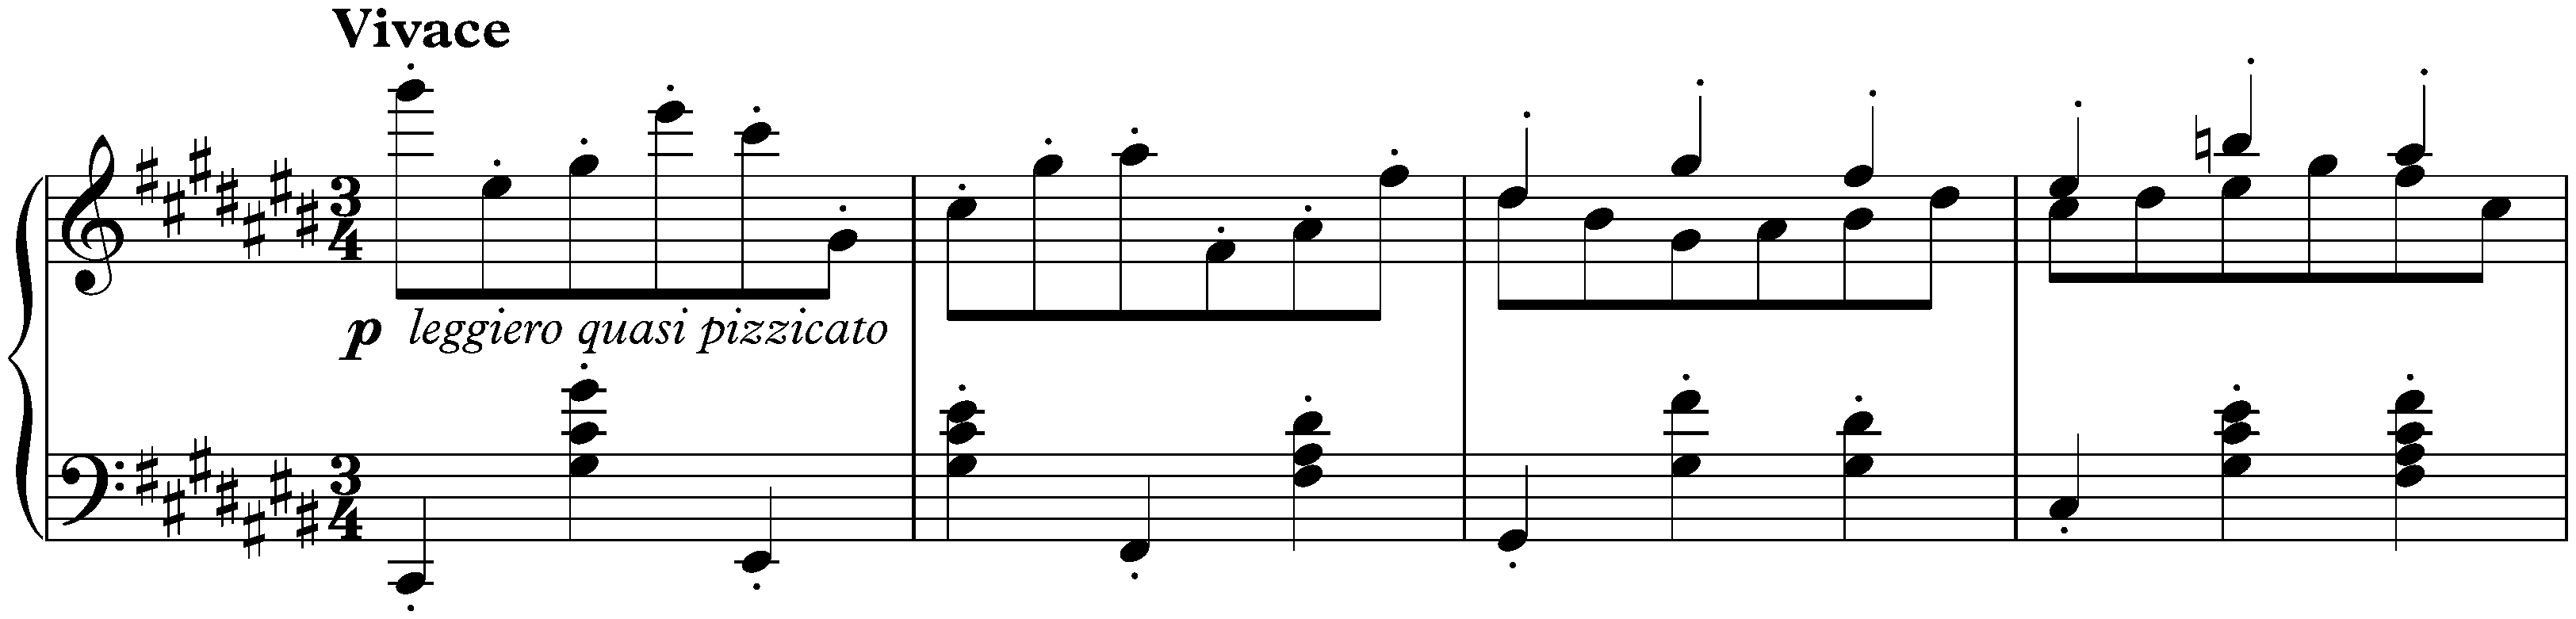 Sixteen Waltzes, op. 39; 6. C-sharp major